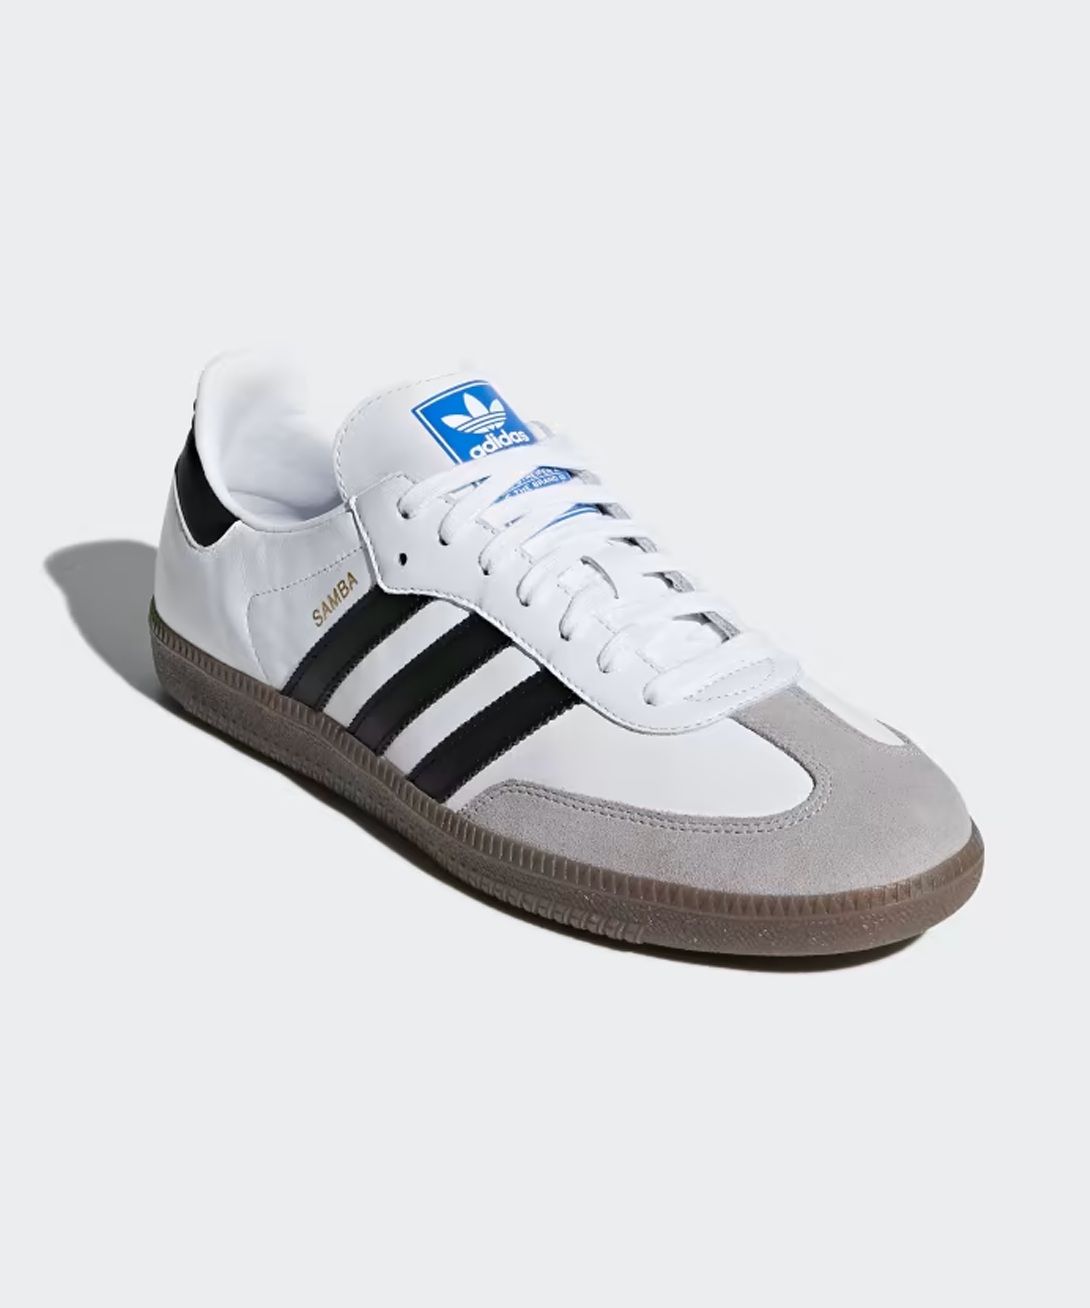 Adidas + Samba OG Shoes